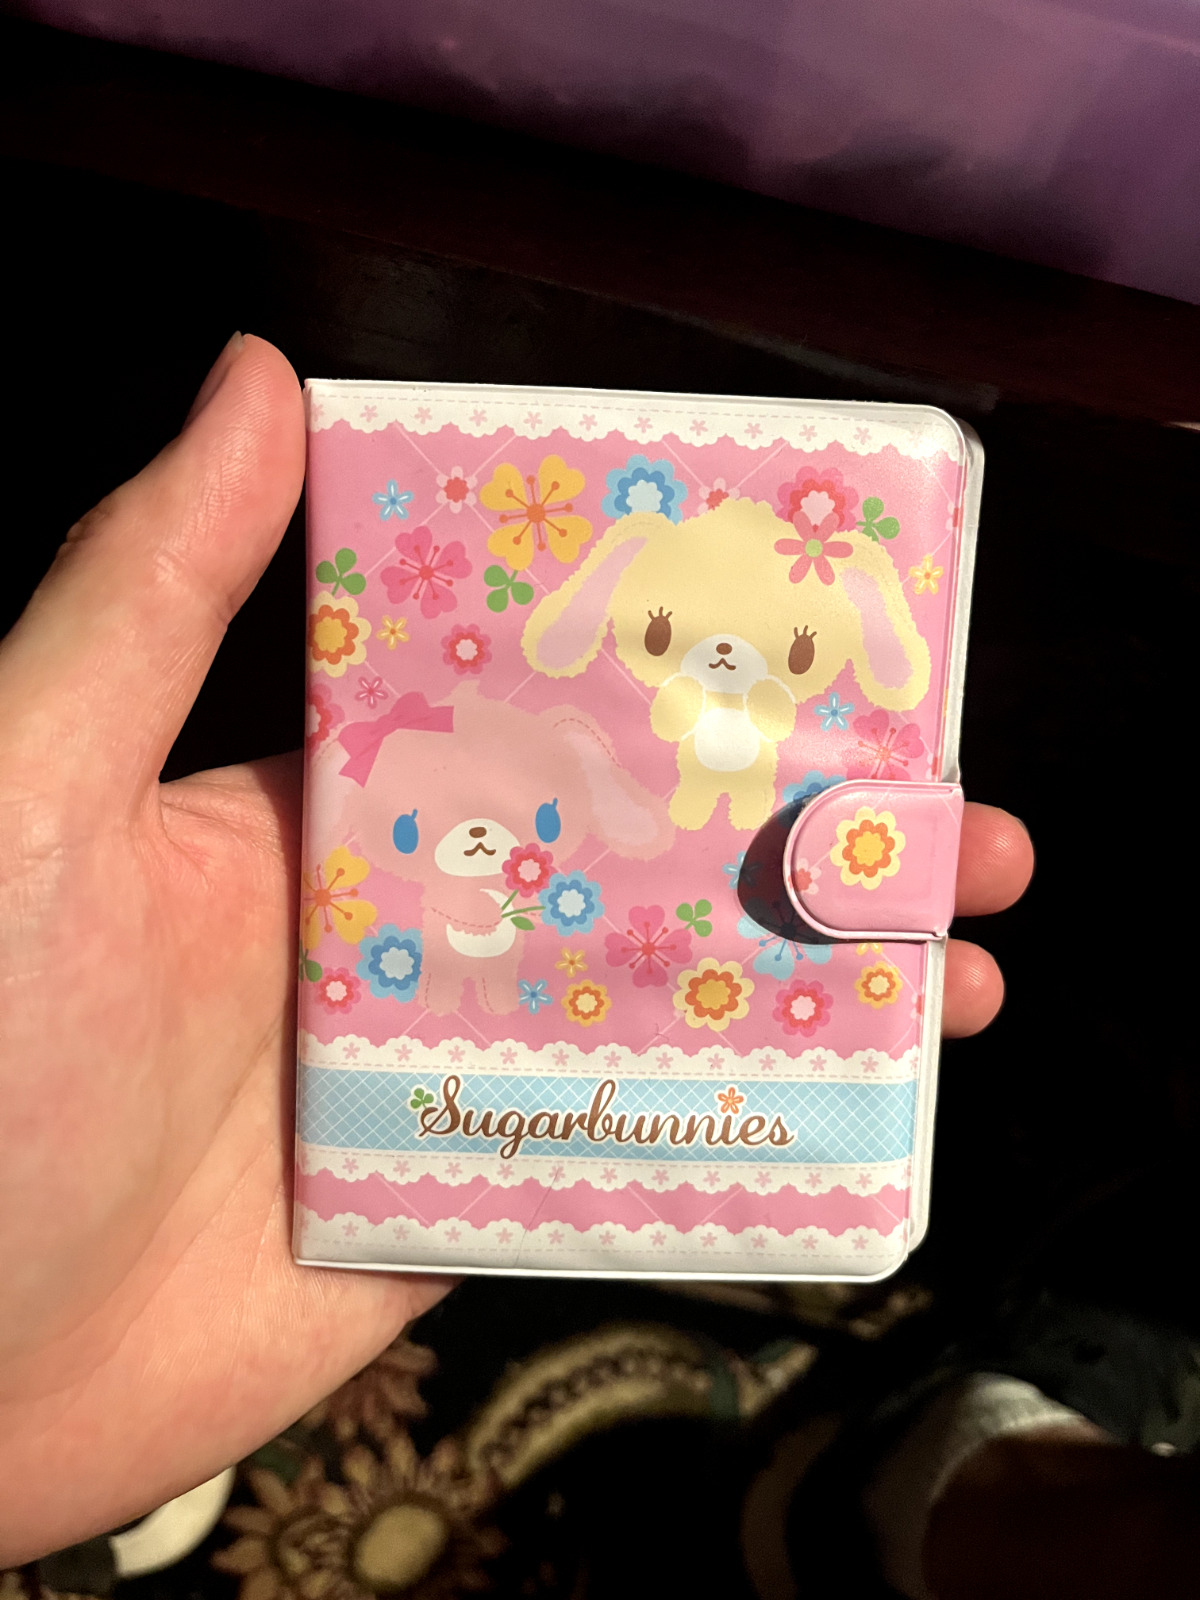 Takara Tomy Sanrio Sugar Bunnies Notepad